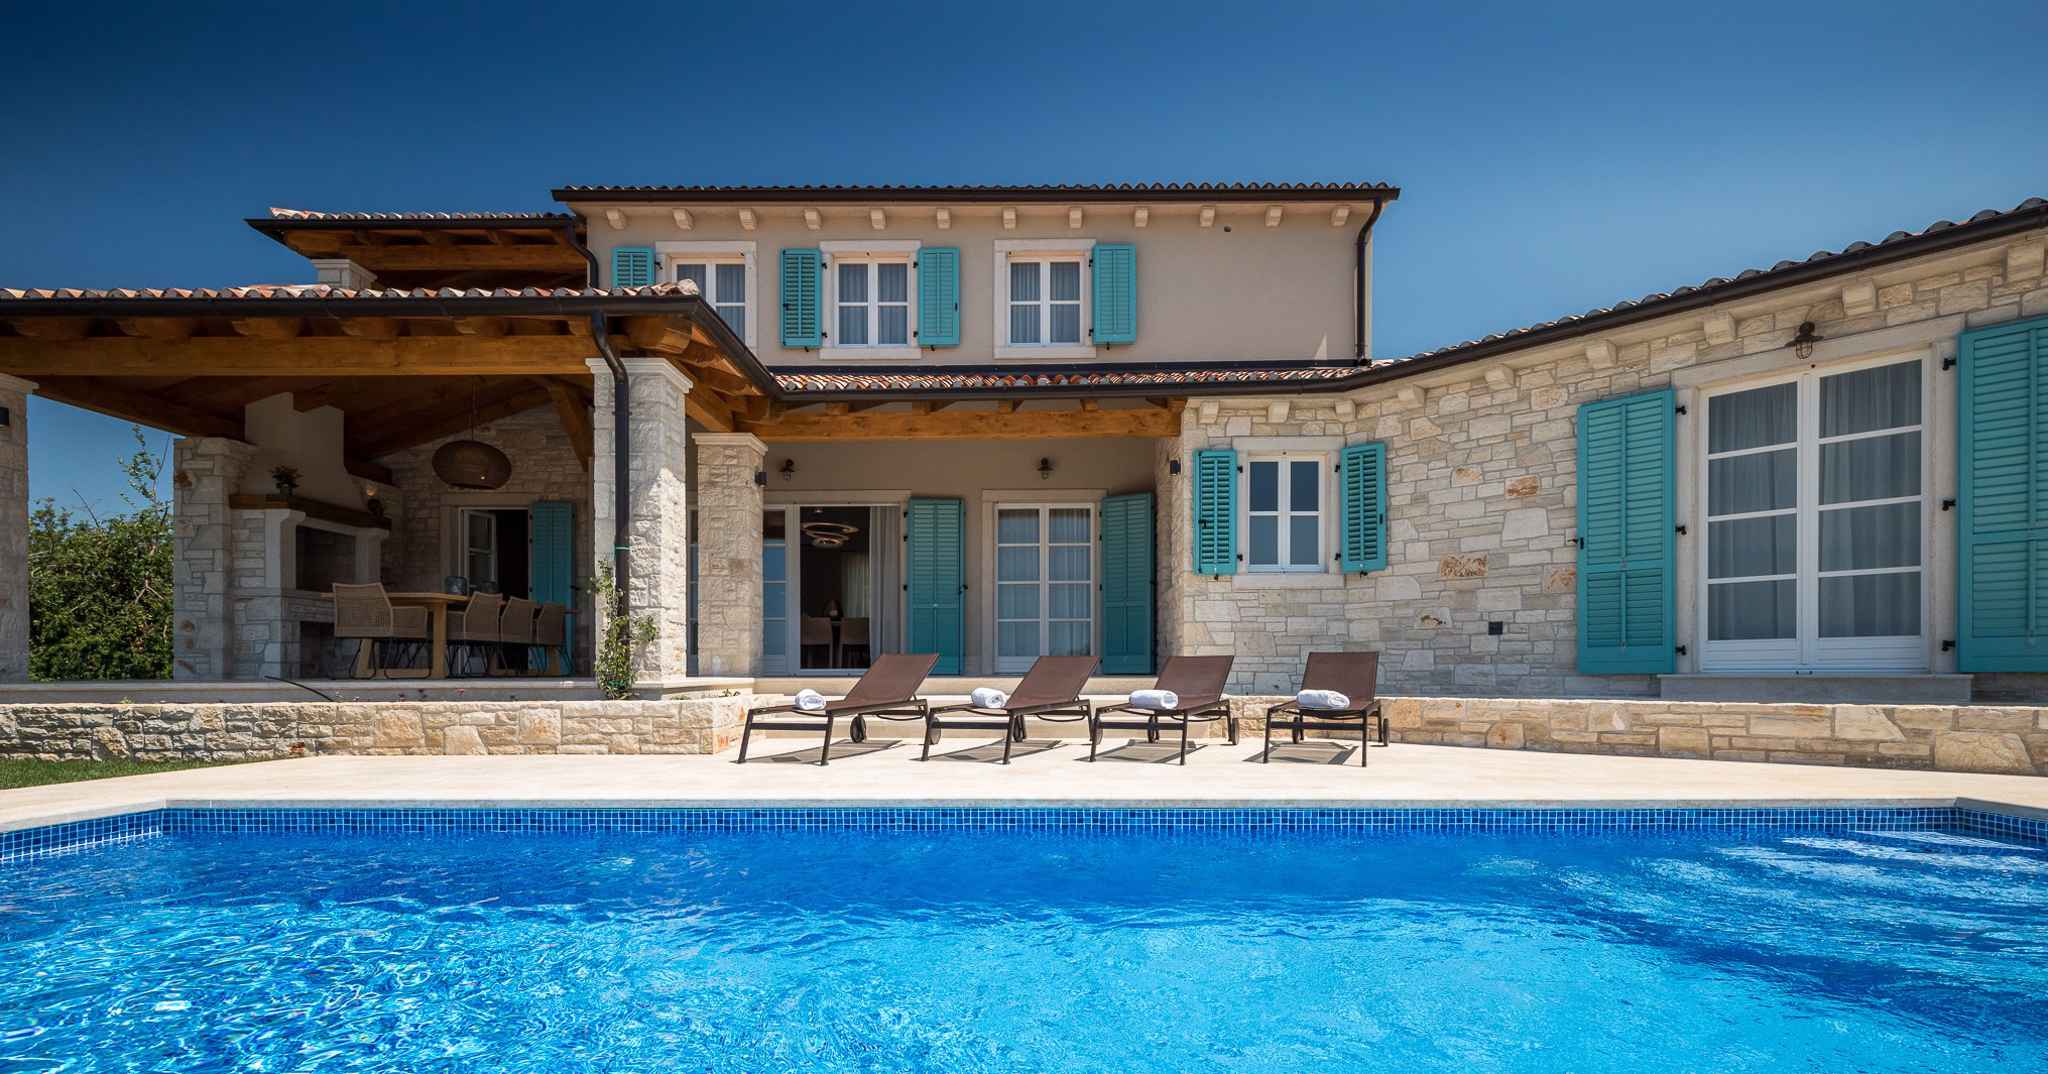 Villa mit Pool und gepflegtem Garten Ferienhaus in Kroatien